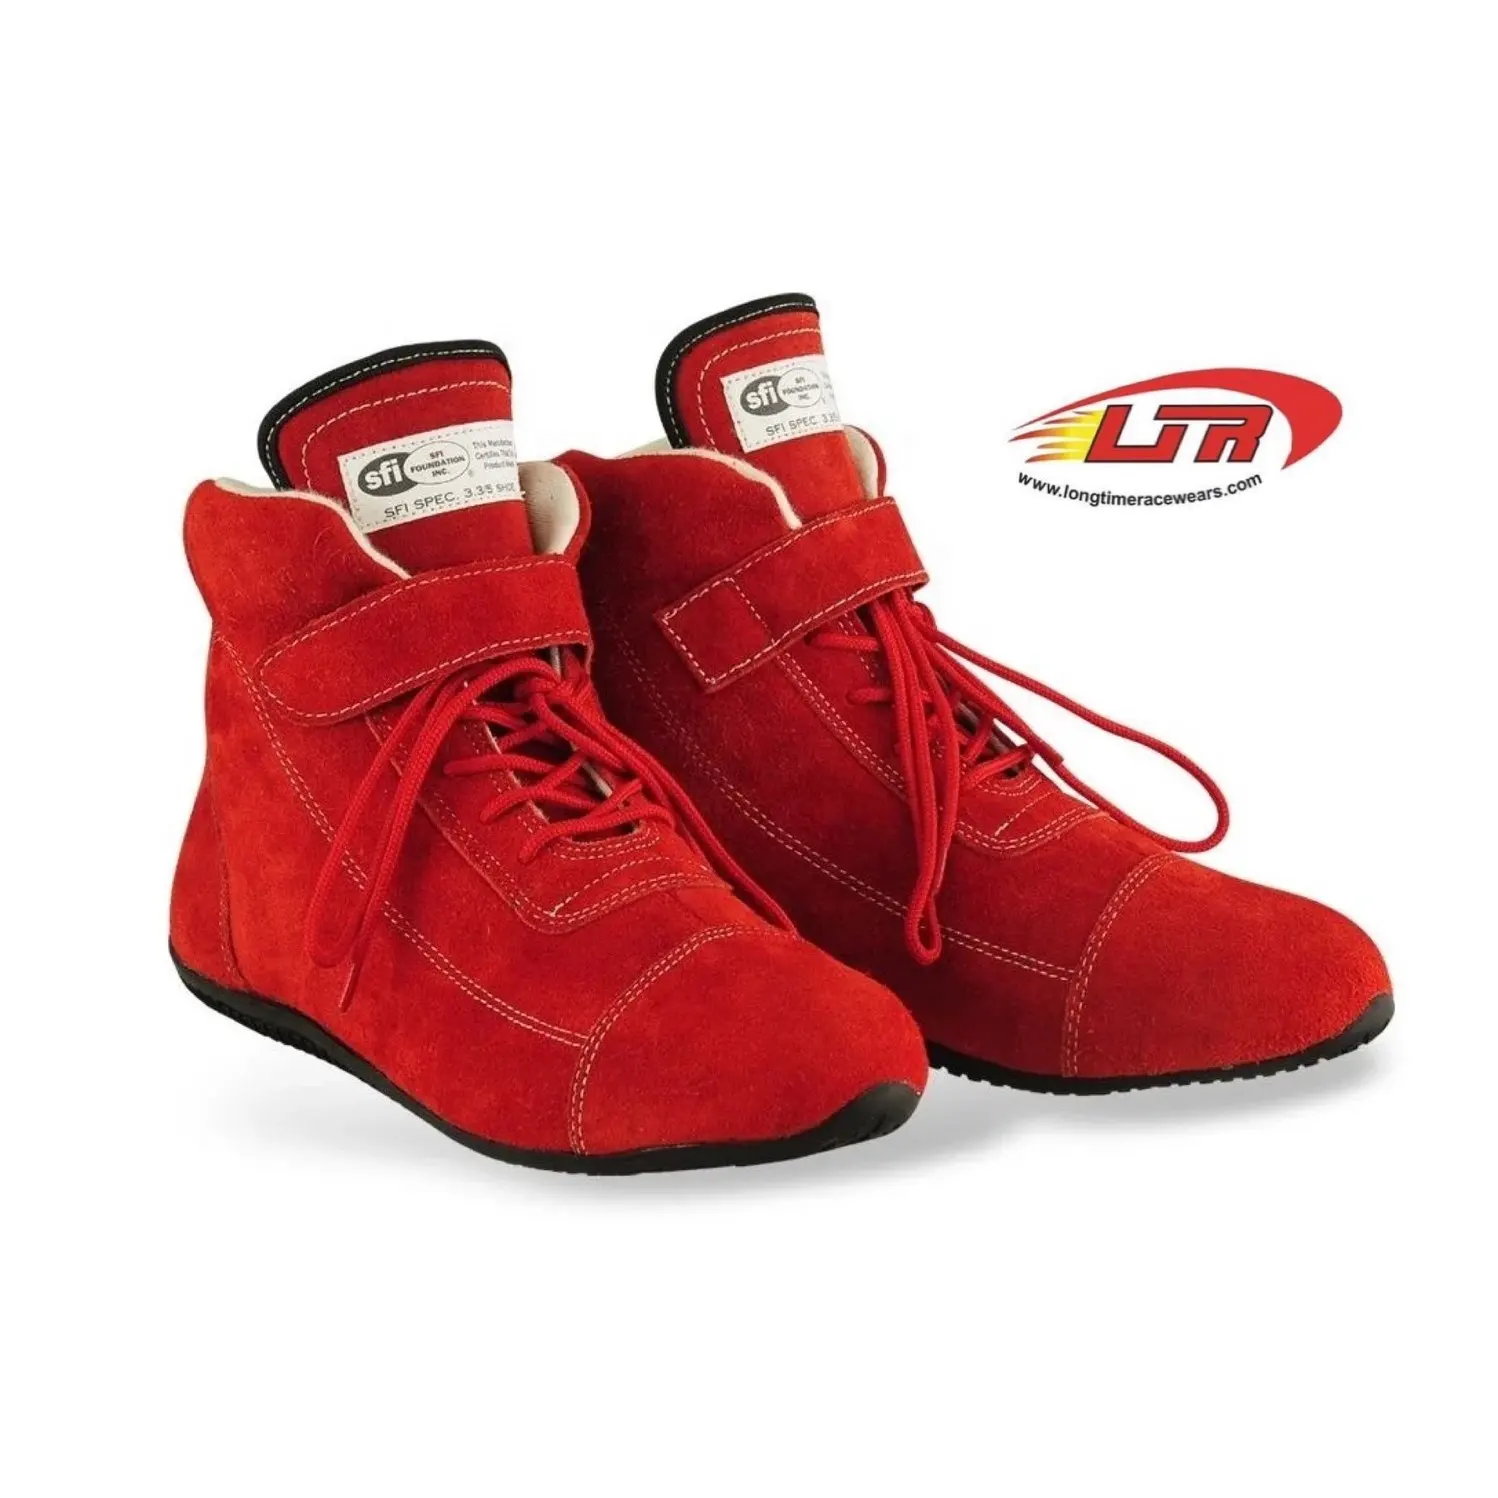 أحذية رياضية للرجال مقاومة للحريق SFI مصنوعة من جلد الأراميد ميتا مصنوعة حسب الطلب أحذية سباق رياضية